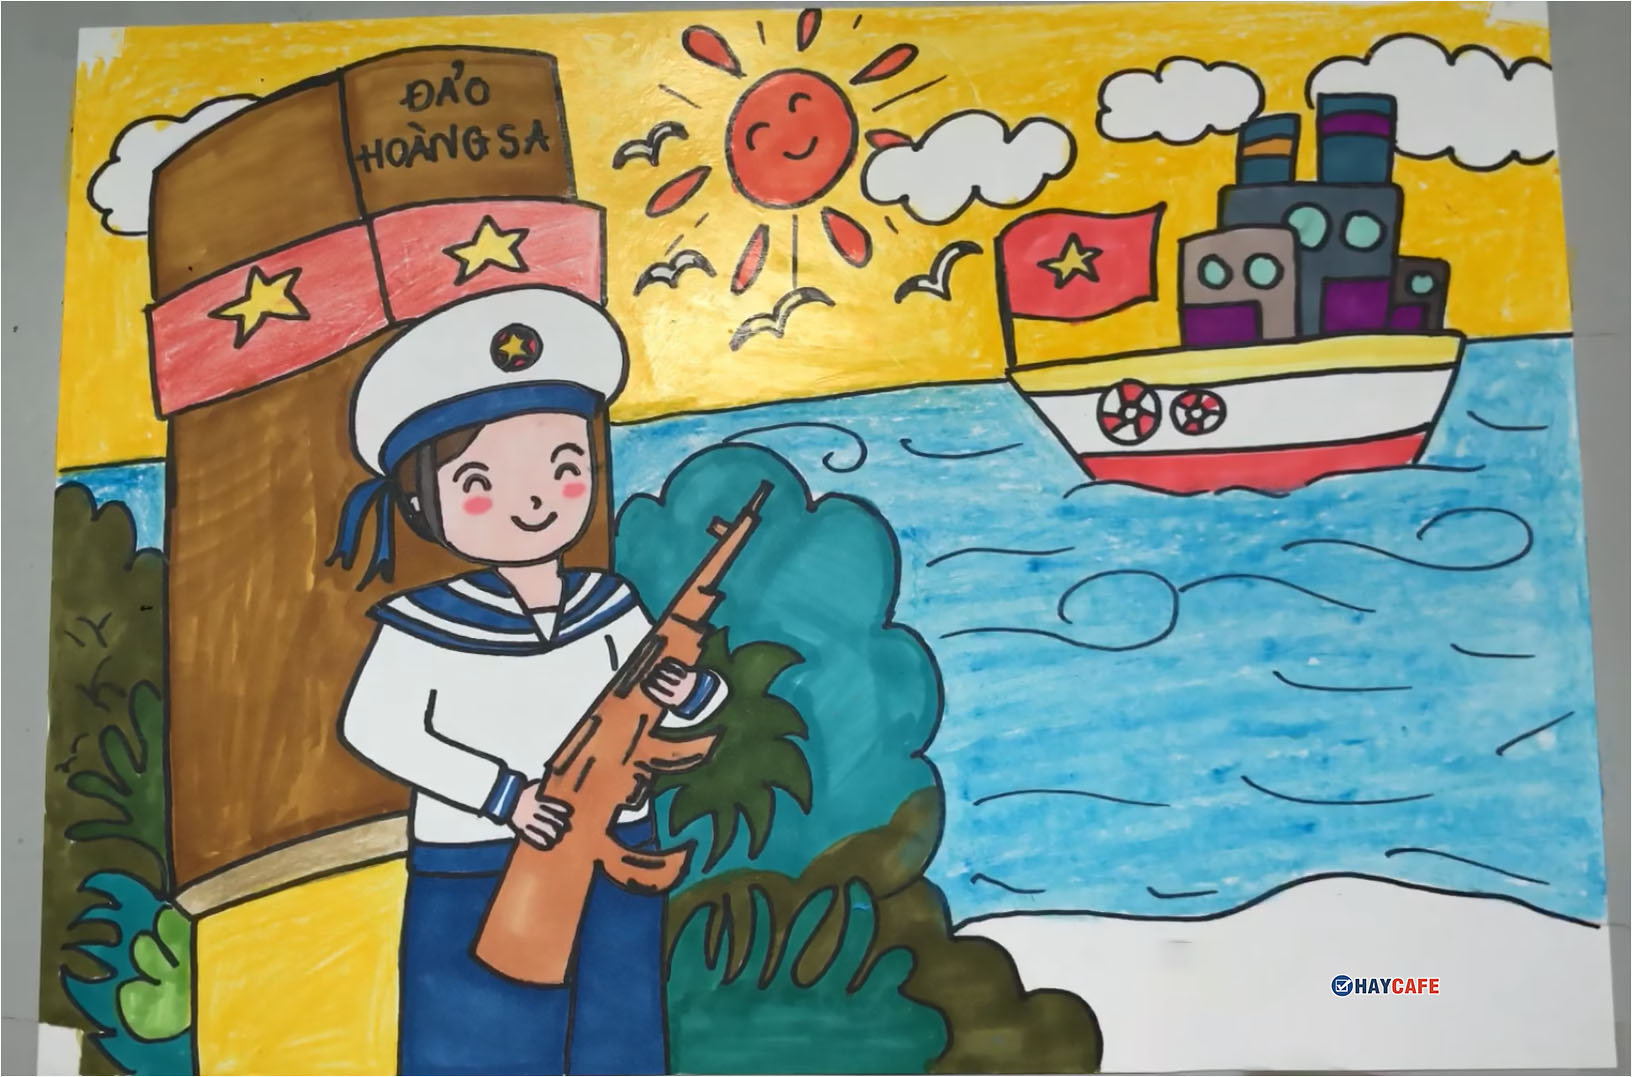 Thể lệ cuộc thi vẽ tranh cổ động Bảo vệ môi trường chống biến đổi khí   Báo Hải Quân Việt Nam